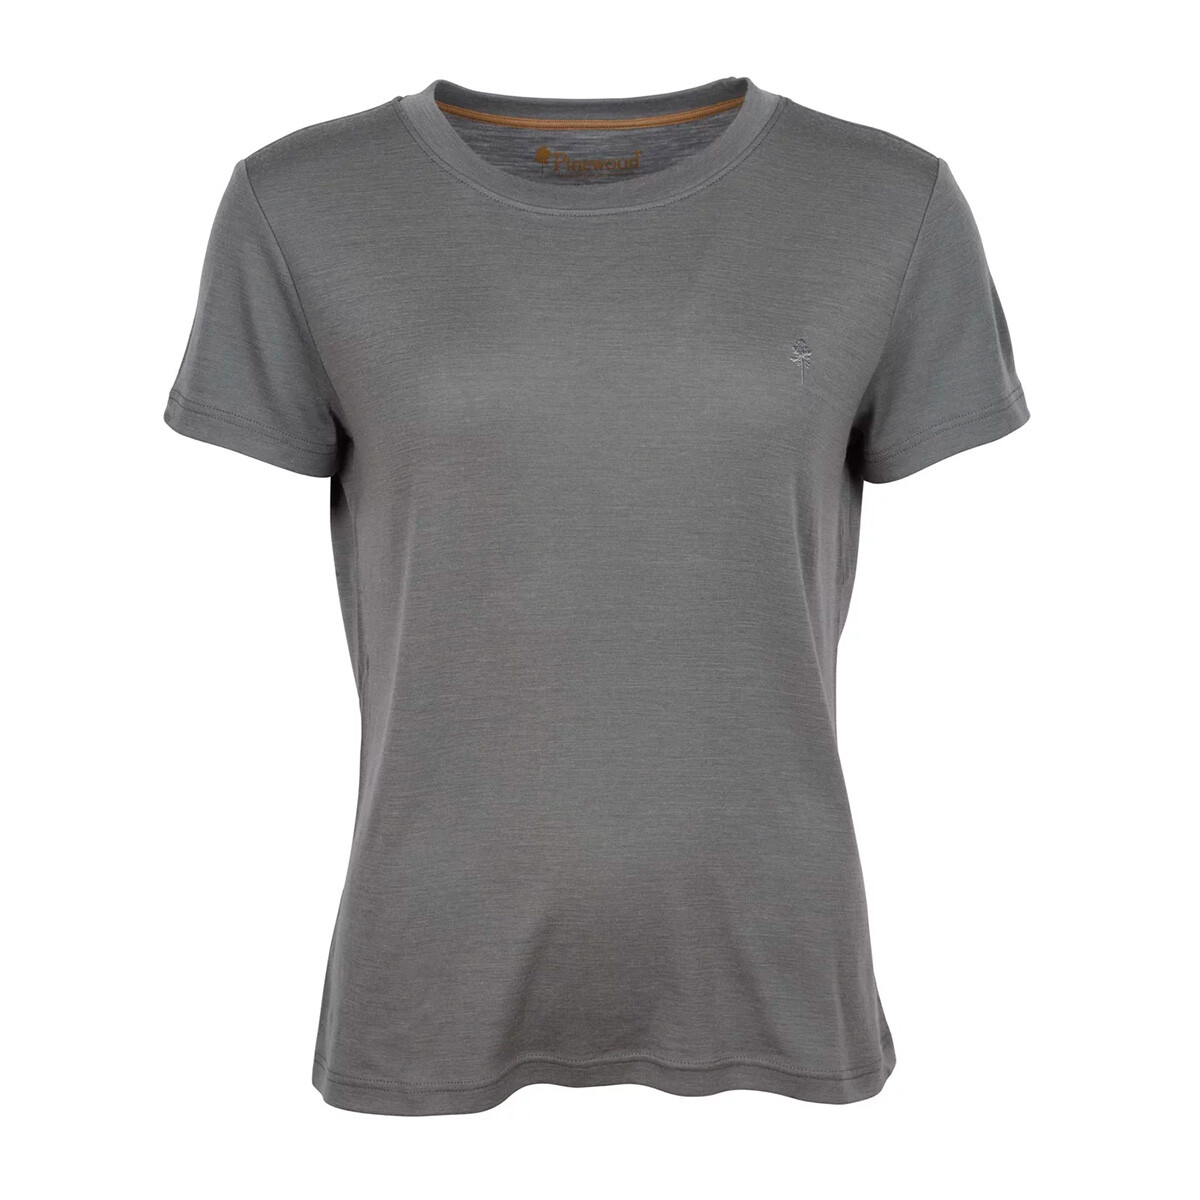 Se Pinewood Travel Merino T-shirt dame (Grey, S) hos Specialbutikken